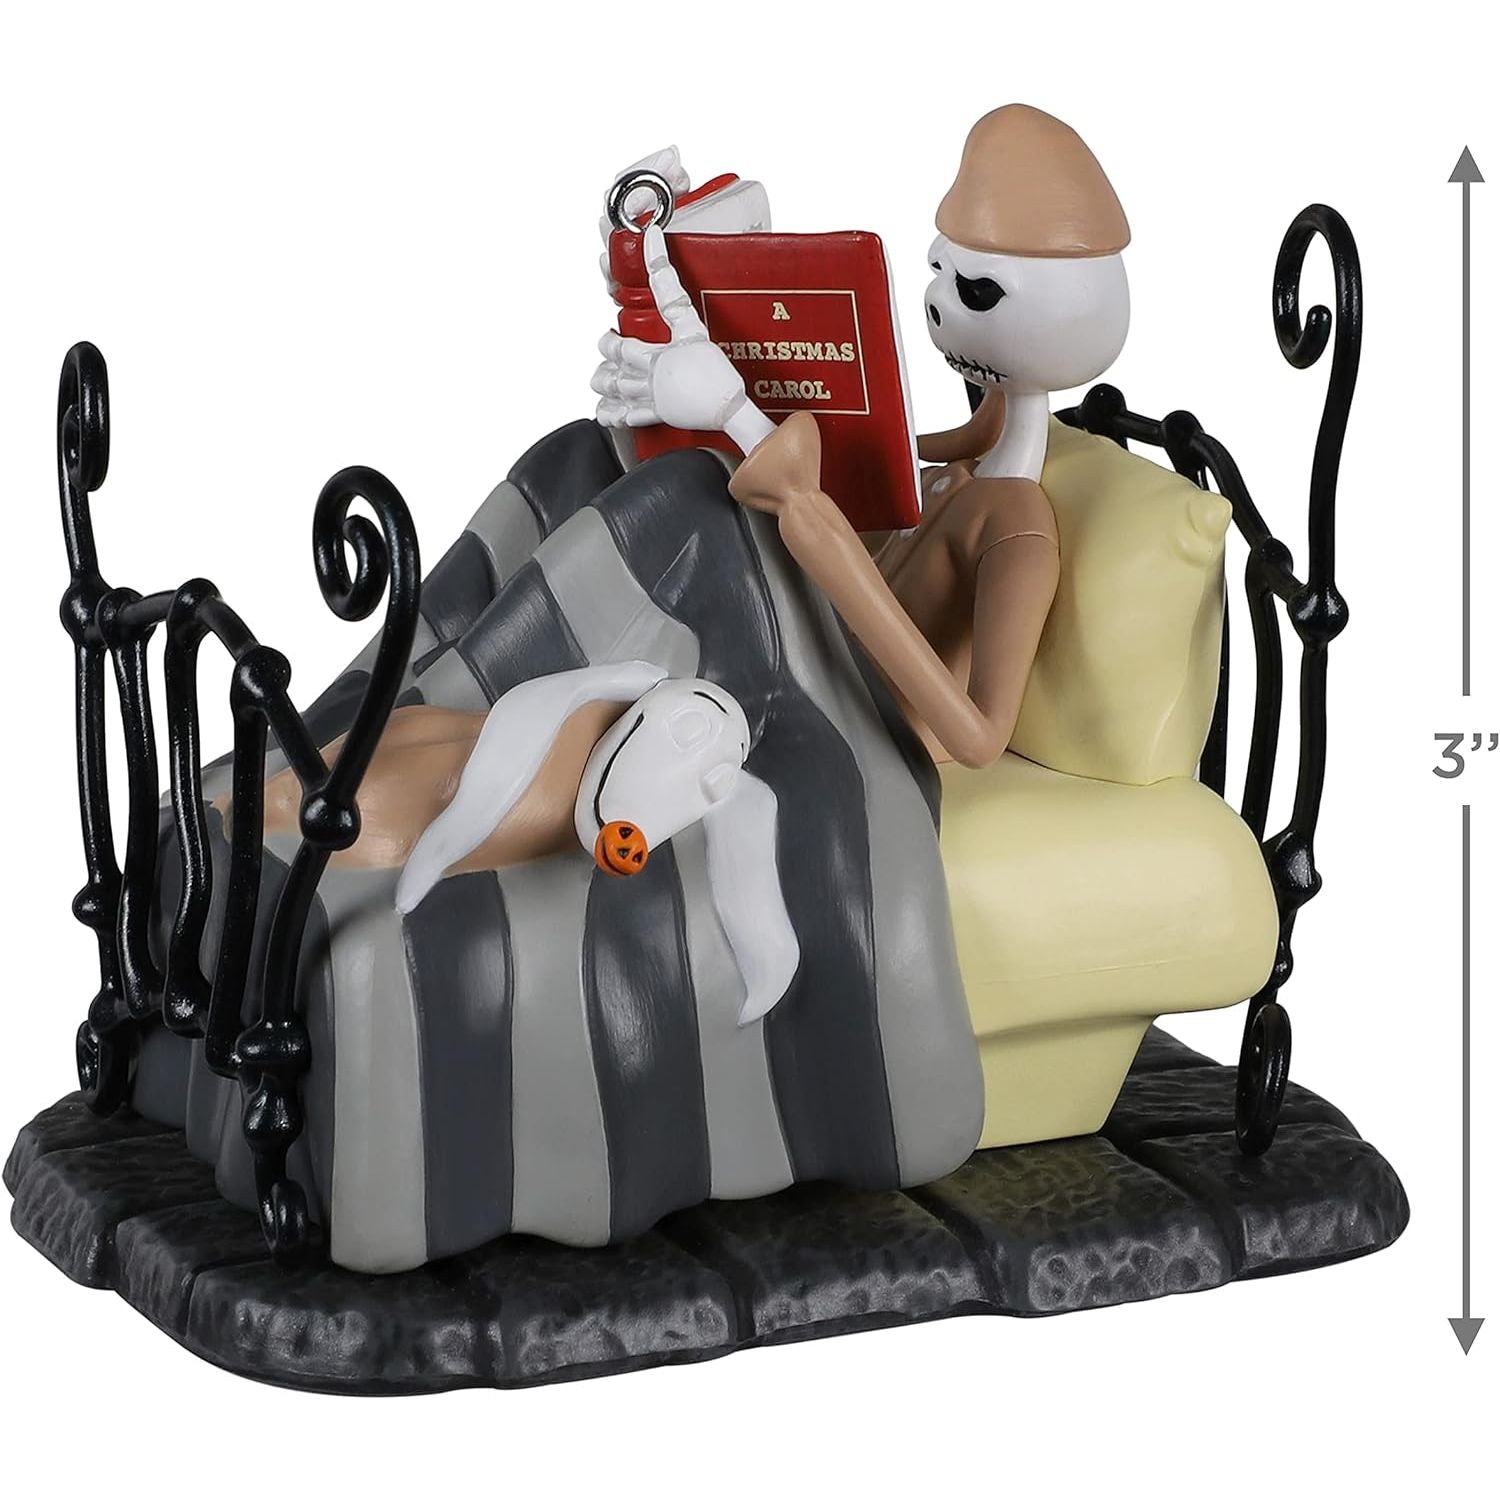 The Nightmare Before Christmas Bedtime Stories Jack Skellington, 2021 Keepsake Ornament